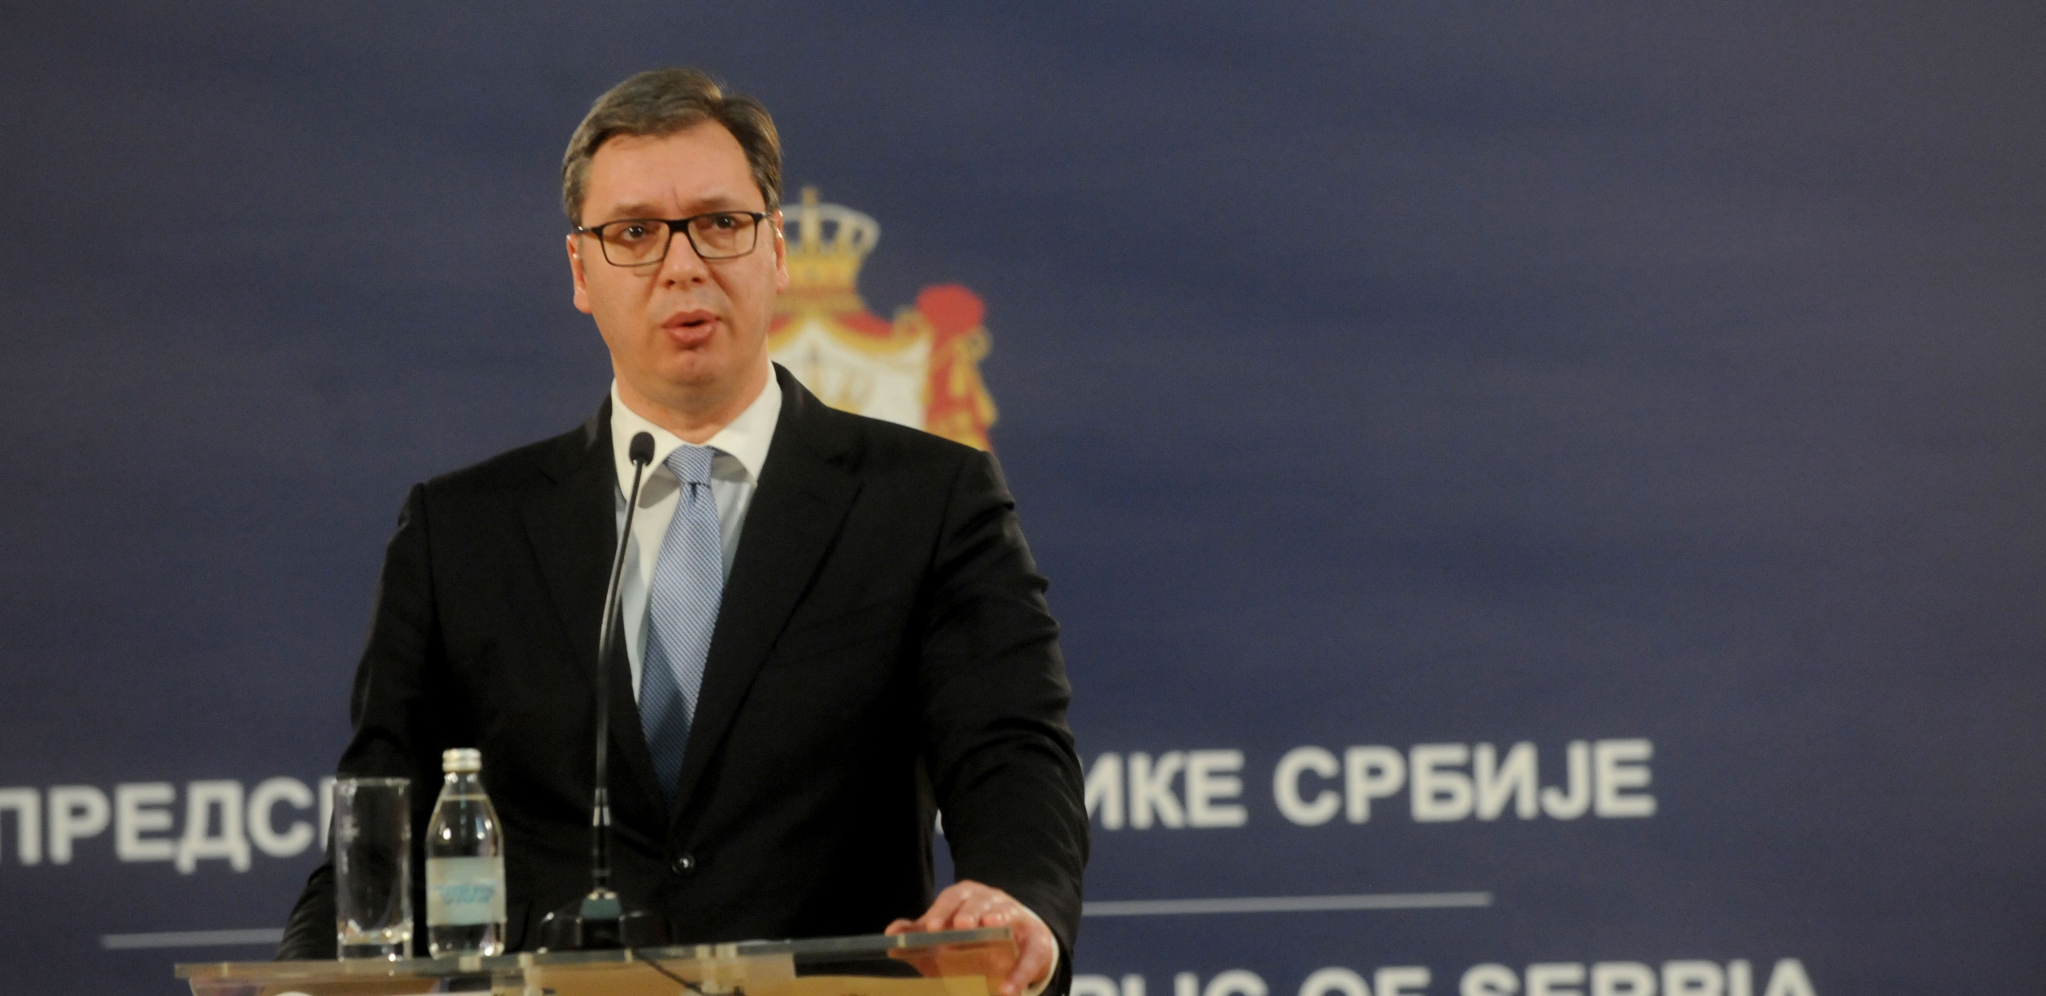 Vučić danas na poziv Brnabić na sednici Saveta za koordinaciju mera za rast BDP